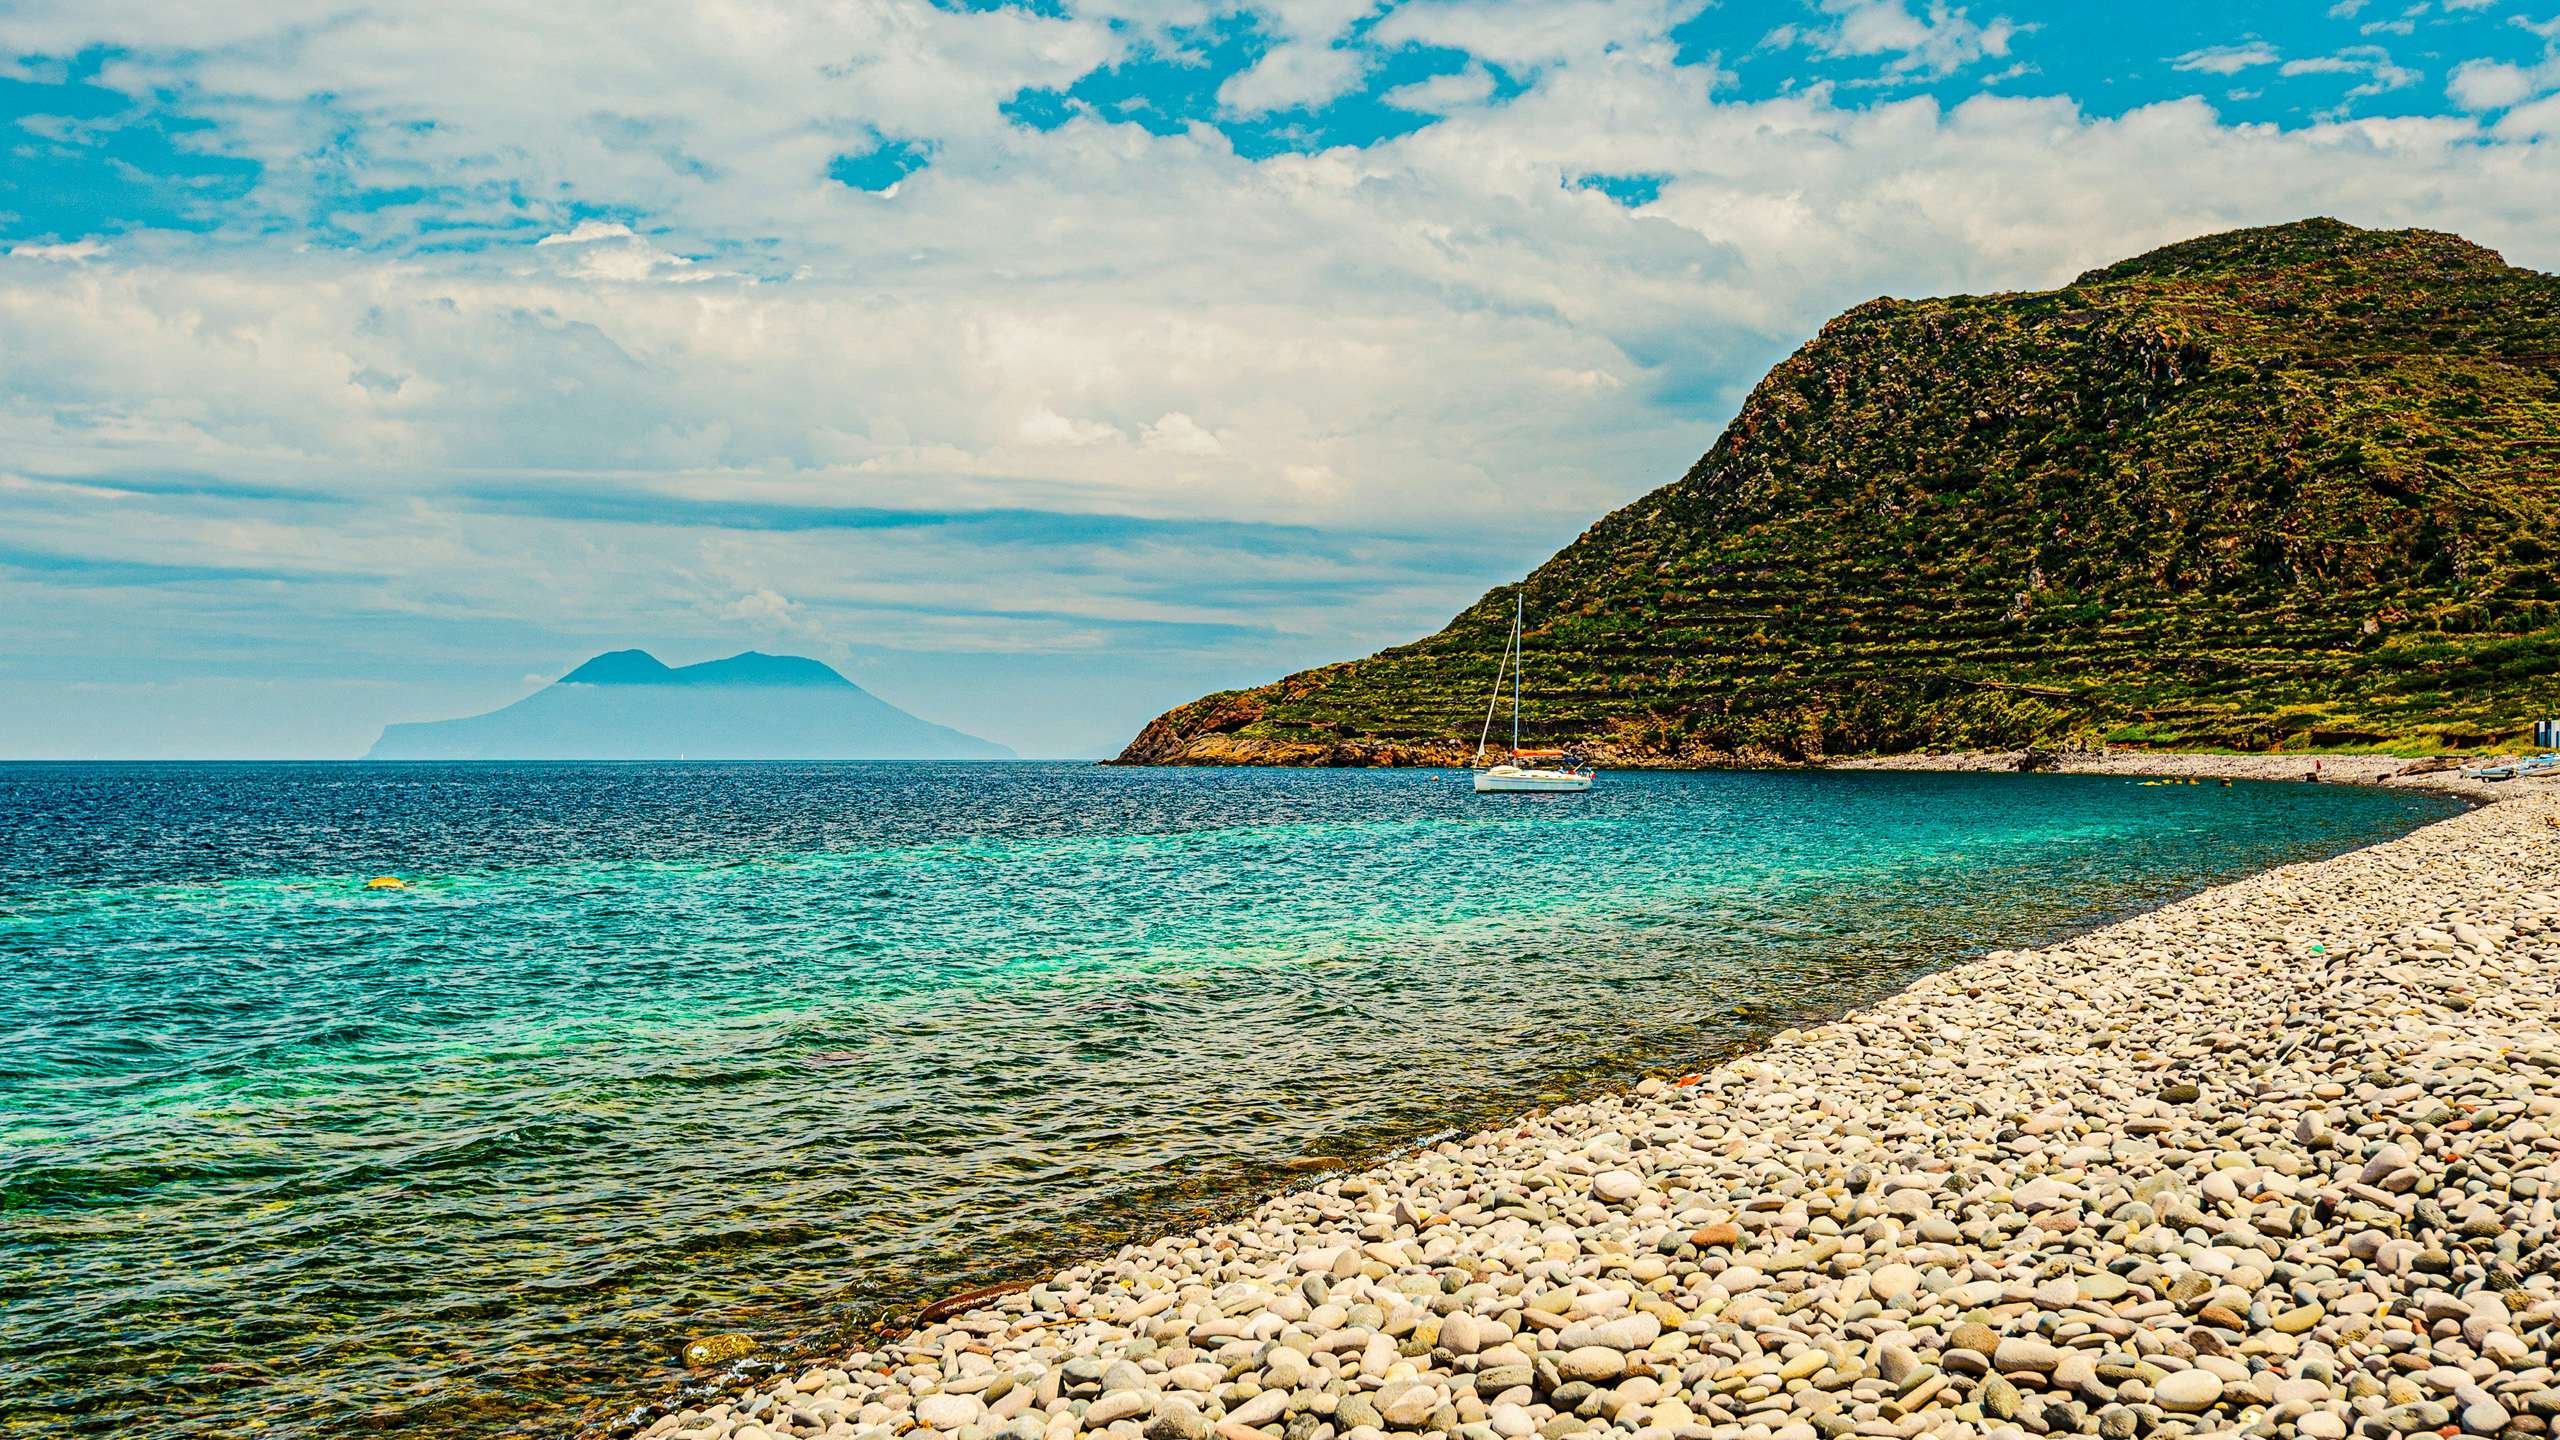 Sicily Yacht Charter - Filicudi beach on a sunny day, Aeolian islands, Sicily, Italy.